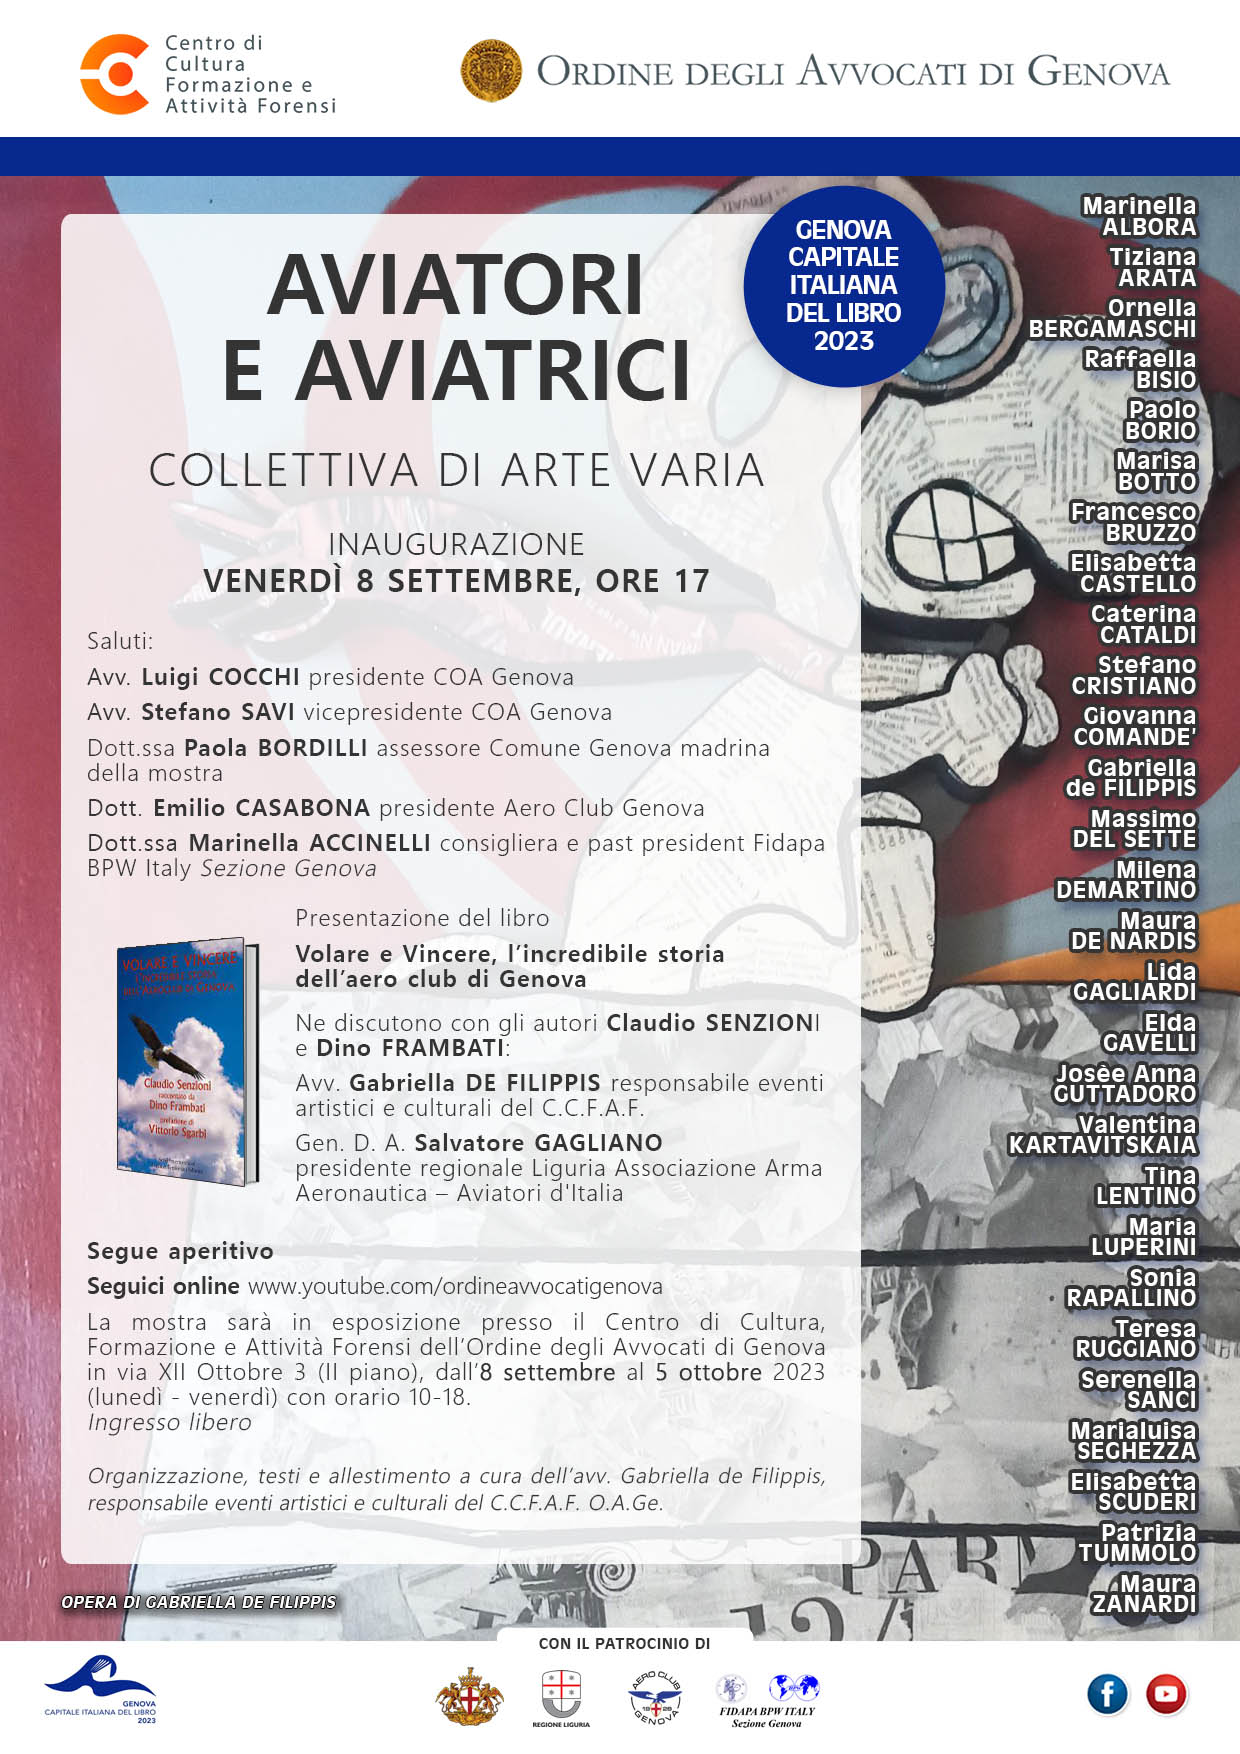 aviatori-e-aviatrici-collettiva-di-arte-viaria-in-occasione-di-genova-capitale-italiana-del-libro-2023.jpg